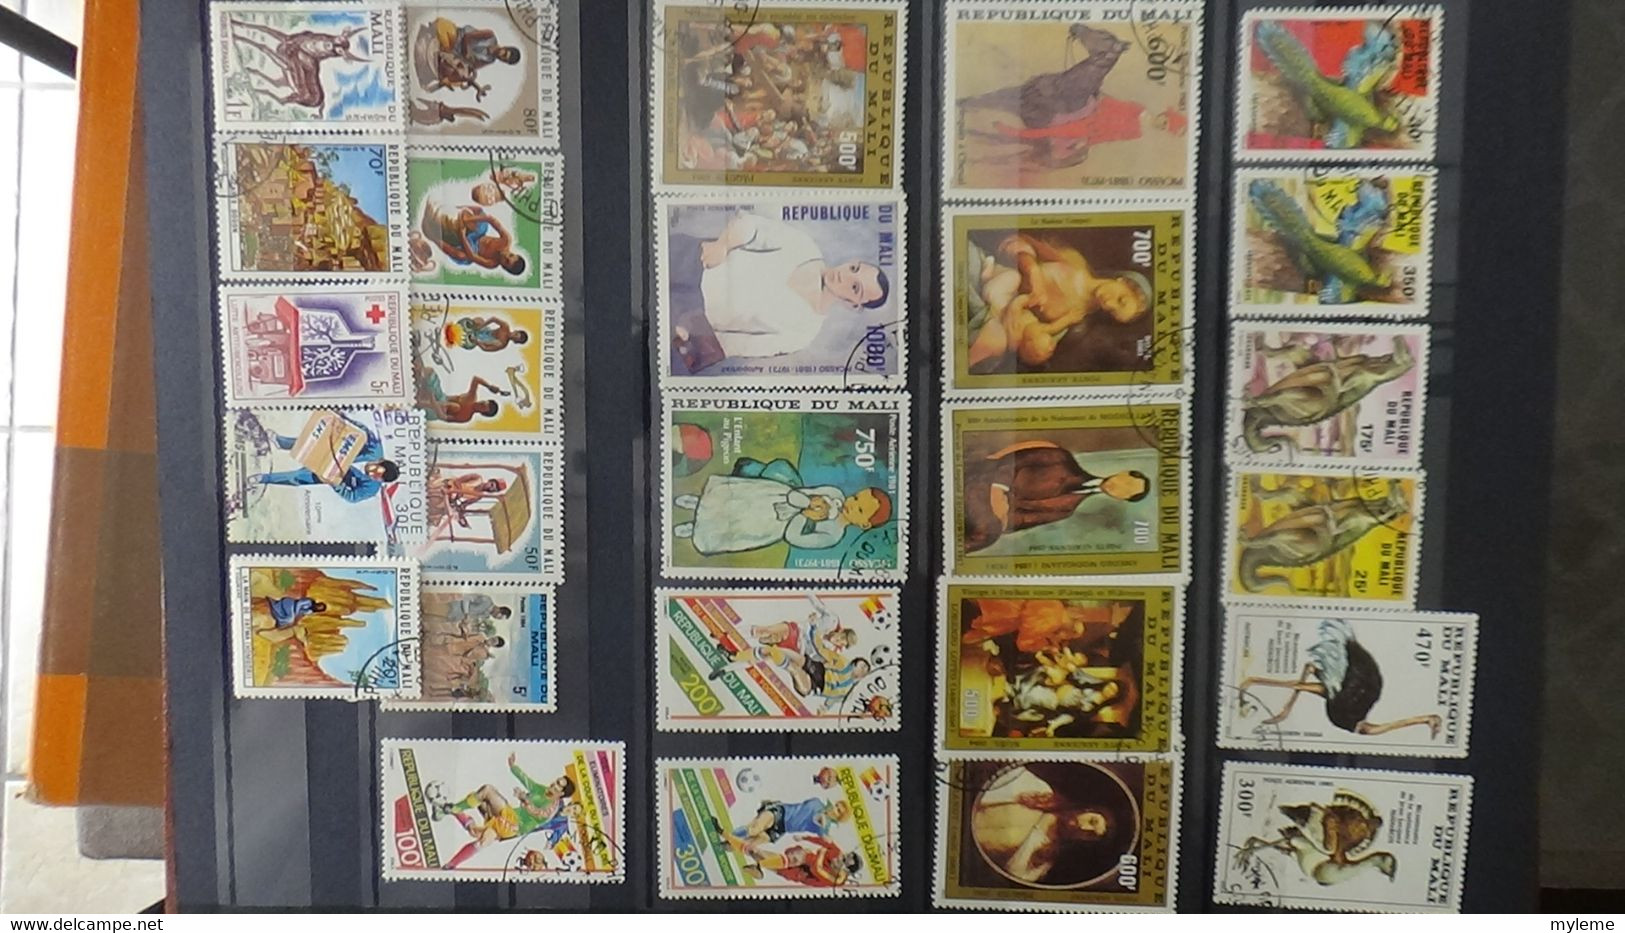 V101 Collection du Laos et autres en timbres oblitérés . A saisir!!!